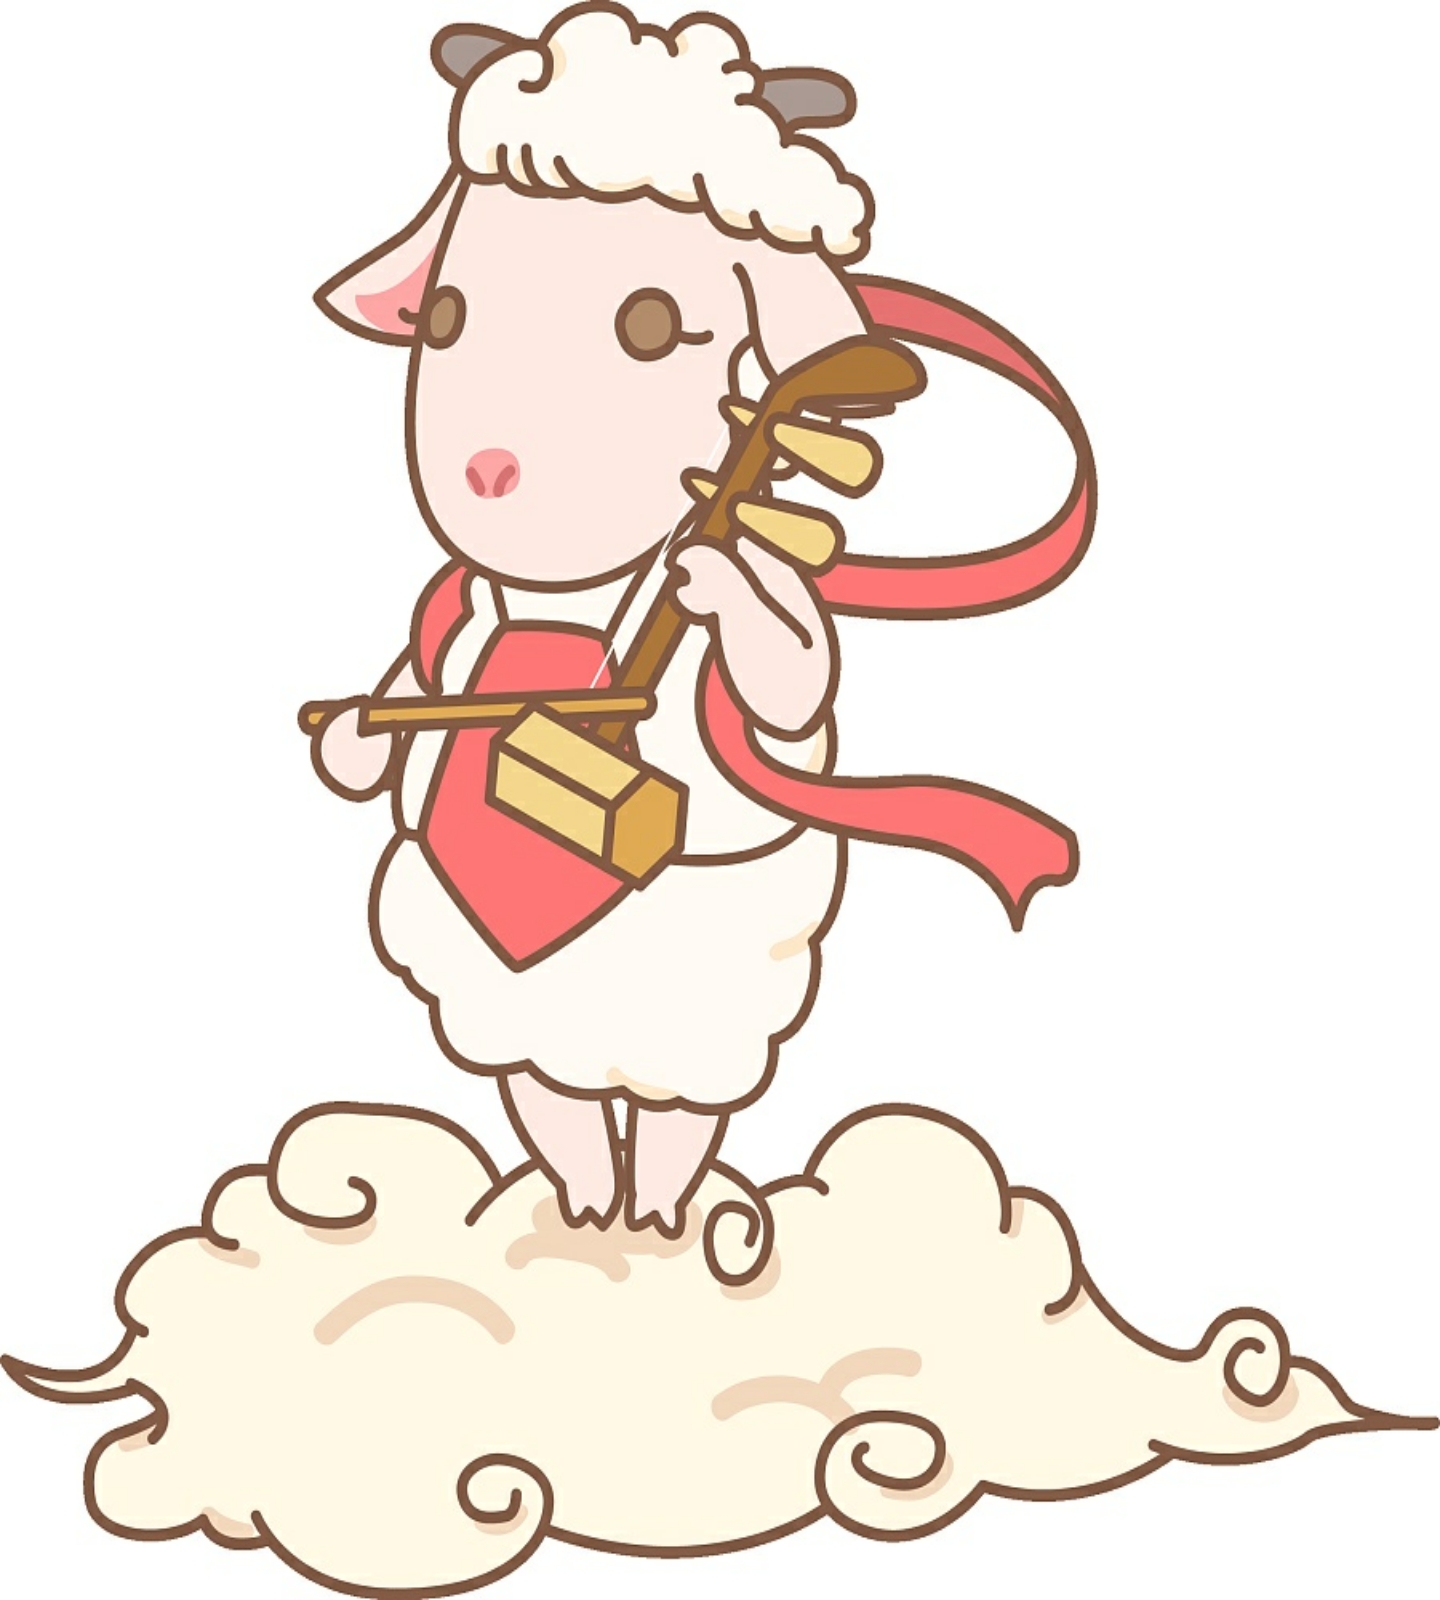 能杰·zid*十二生肖卡通形象设计——羊